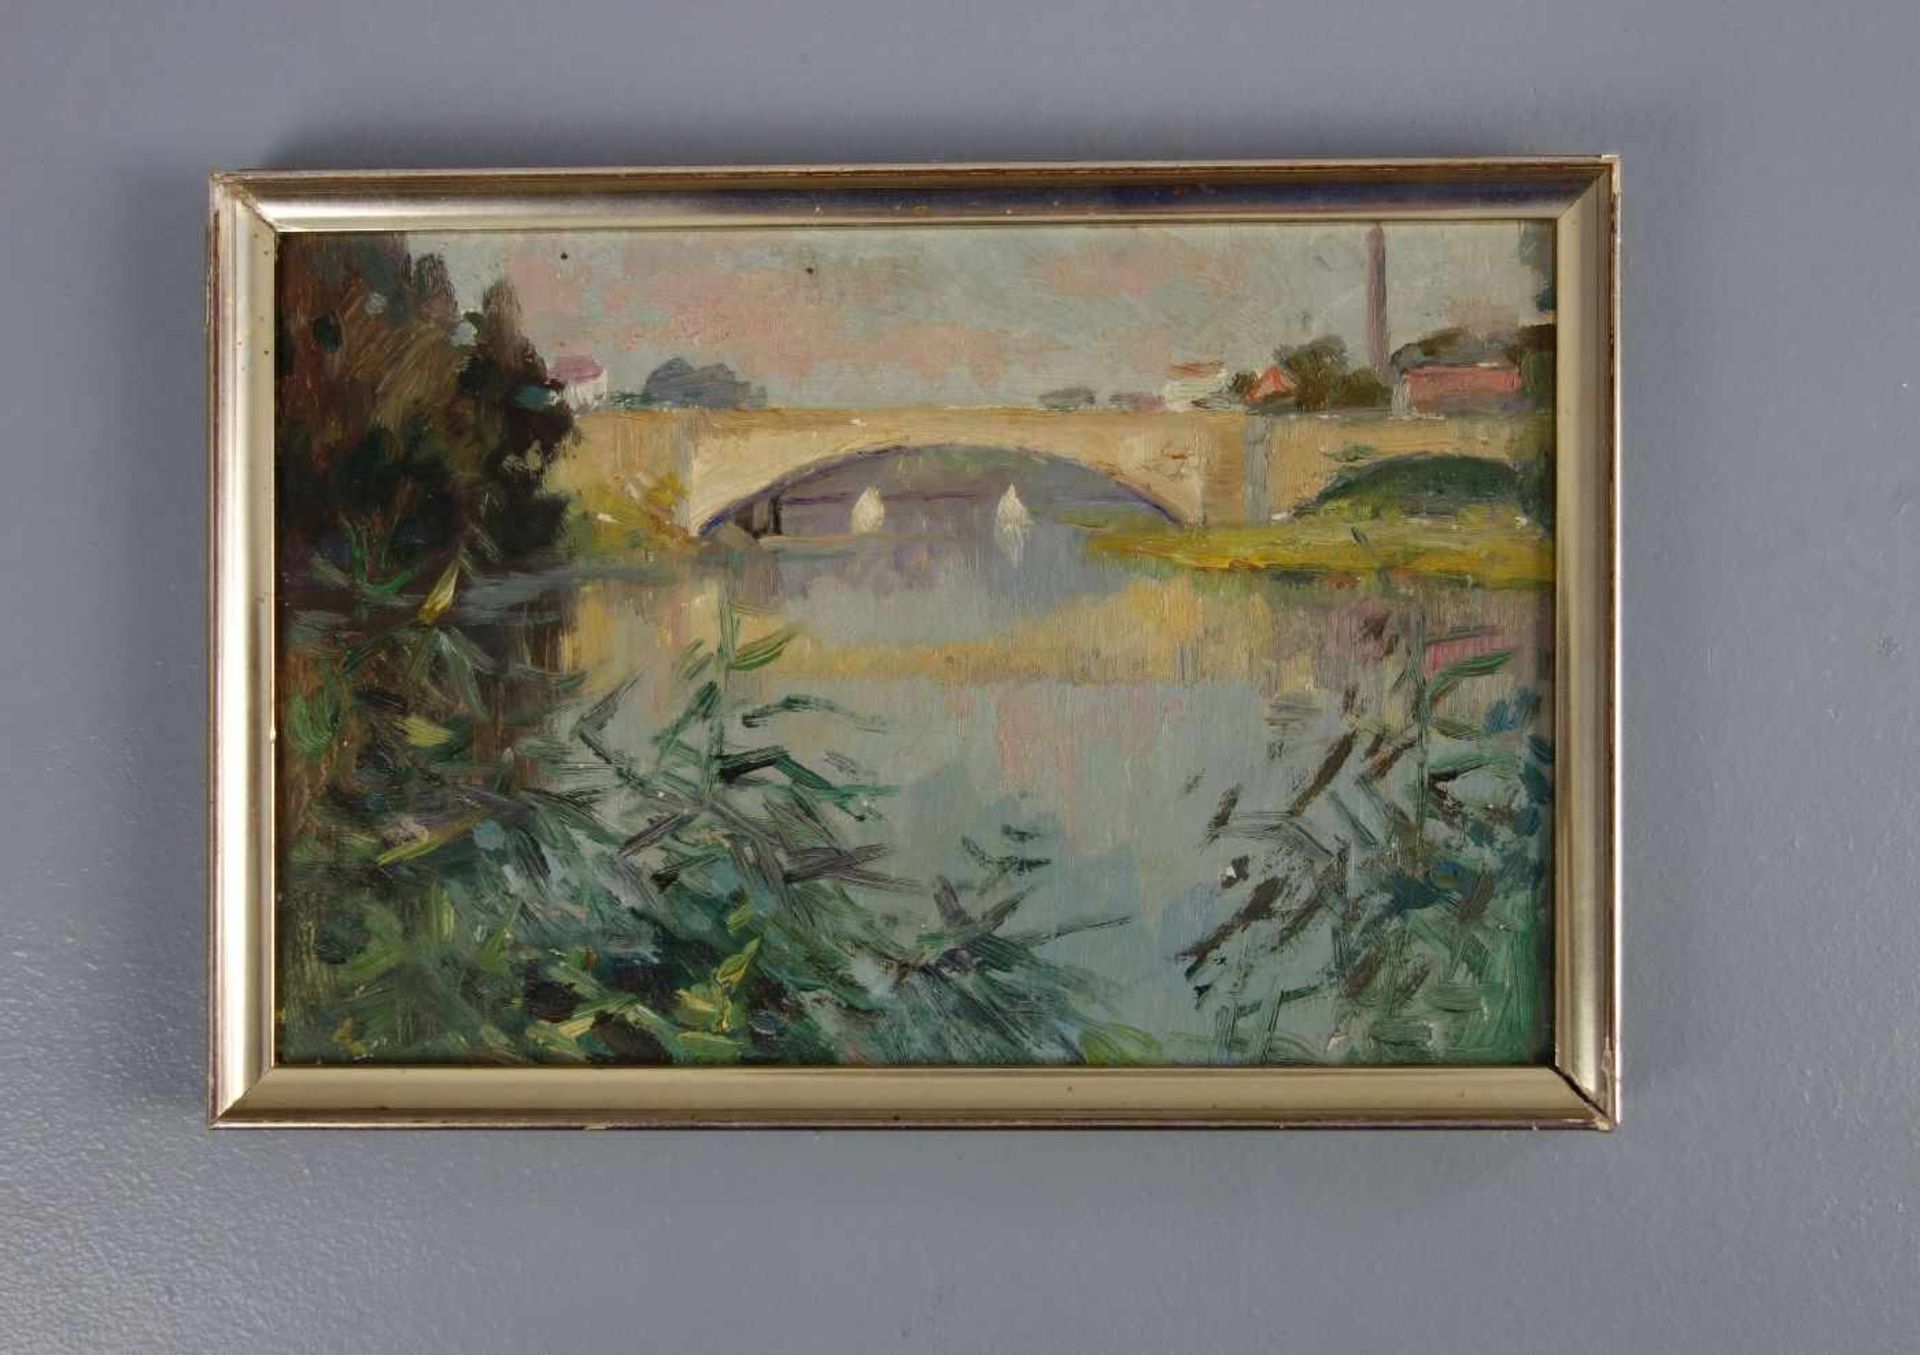 VON ASSAULENKO, ALEXEJ (Kiew 1913-1989 Kiel), Gemälde / painting: "Die Ems in Rheine: Blick auf